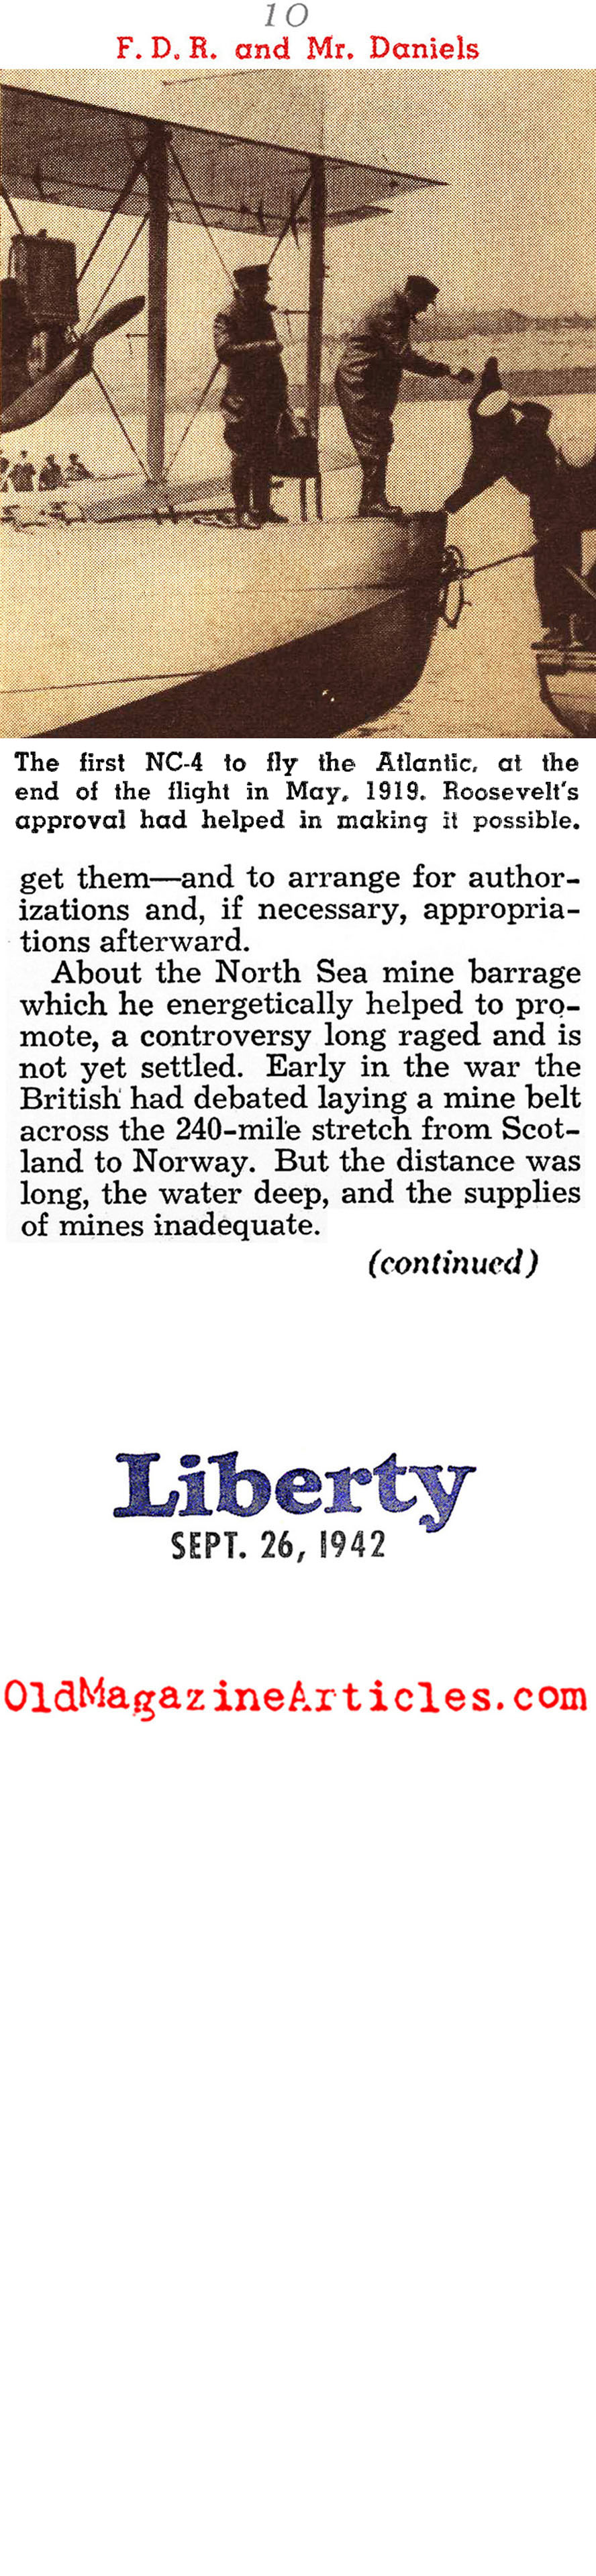 FDR in W.W. I (Liberty Magazine, 1942)